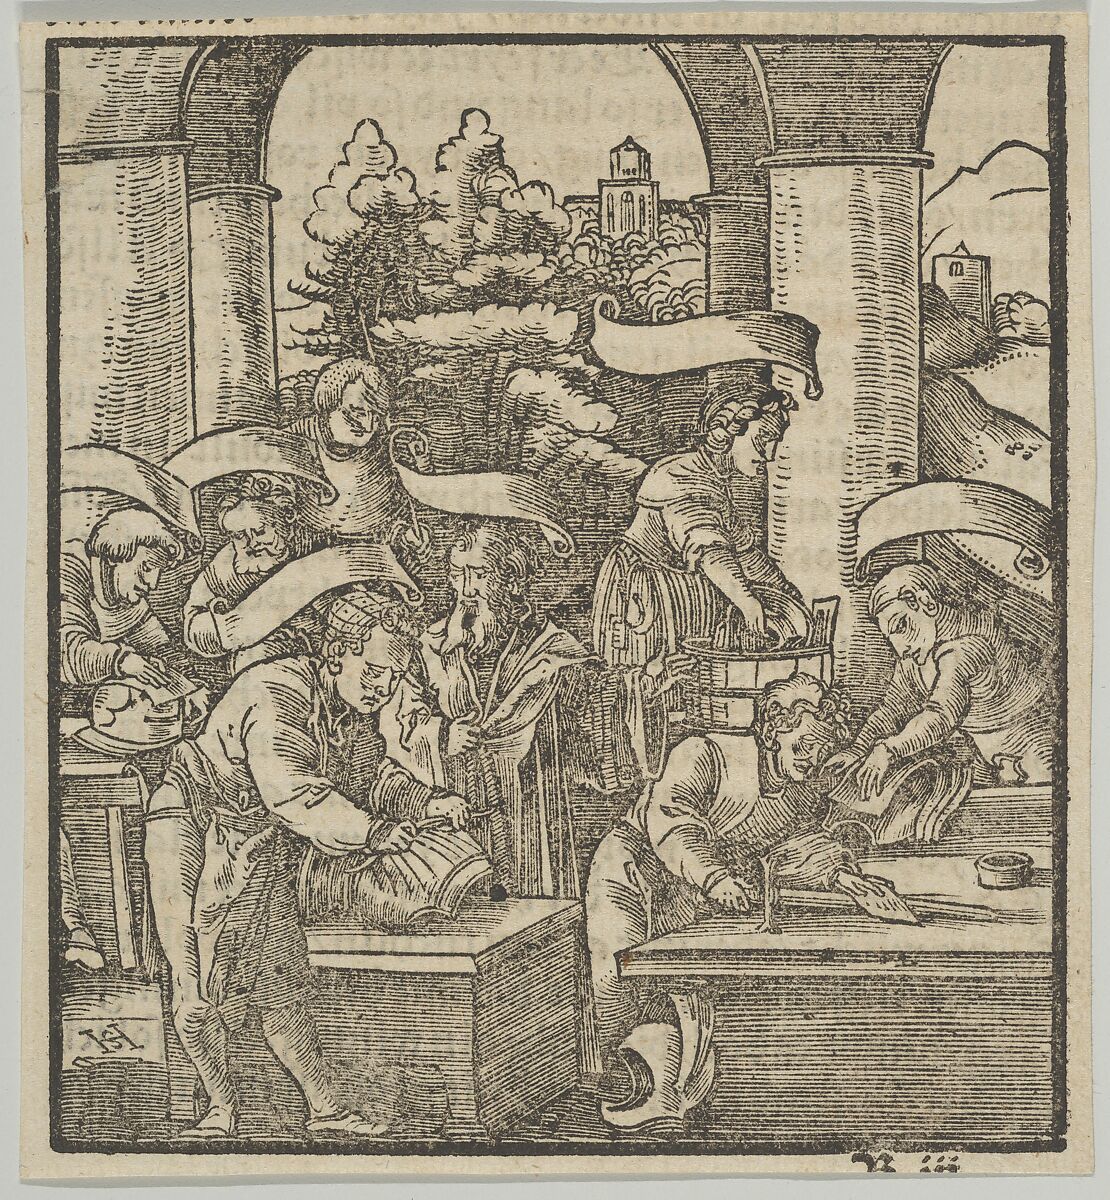 The Making of Armours, from Hymmelwagen auff dem, wer wol lebt..., Hans Schäufelein (German, Nuremberg ca. 1480–ca. 1540 Nördlingen), Woodcut 